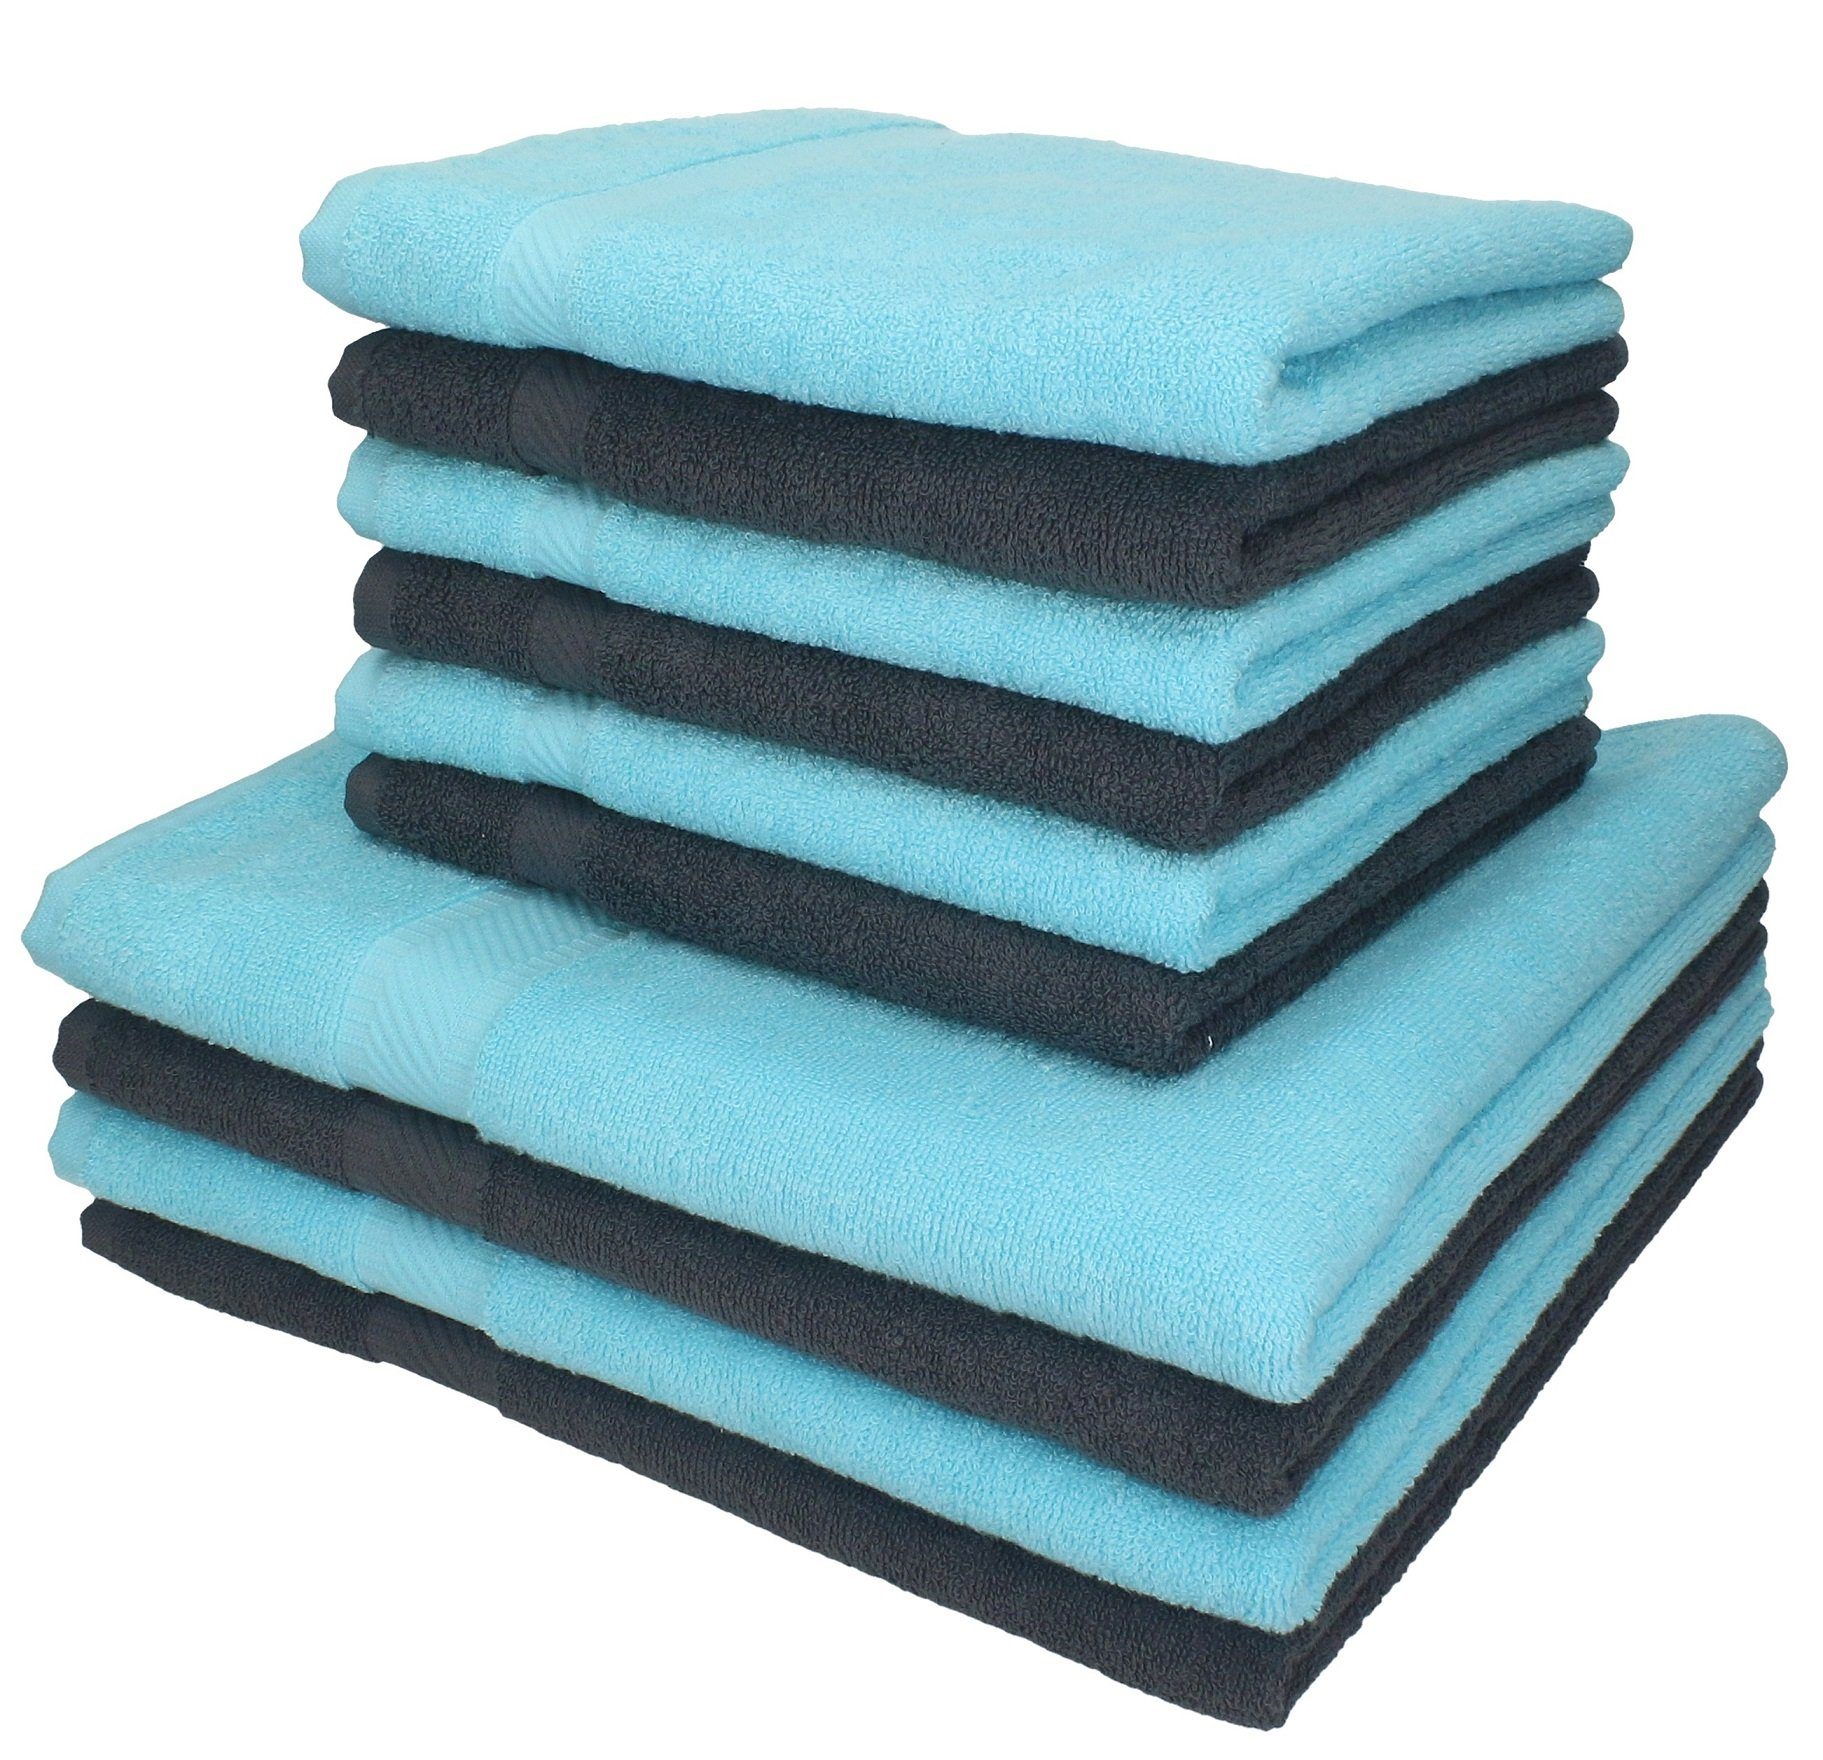 türkis, Farbe Betz und Handtuch Set Palermo 10-TLG. Baumwolle Handtuch-Set 100% anthrazit